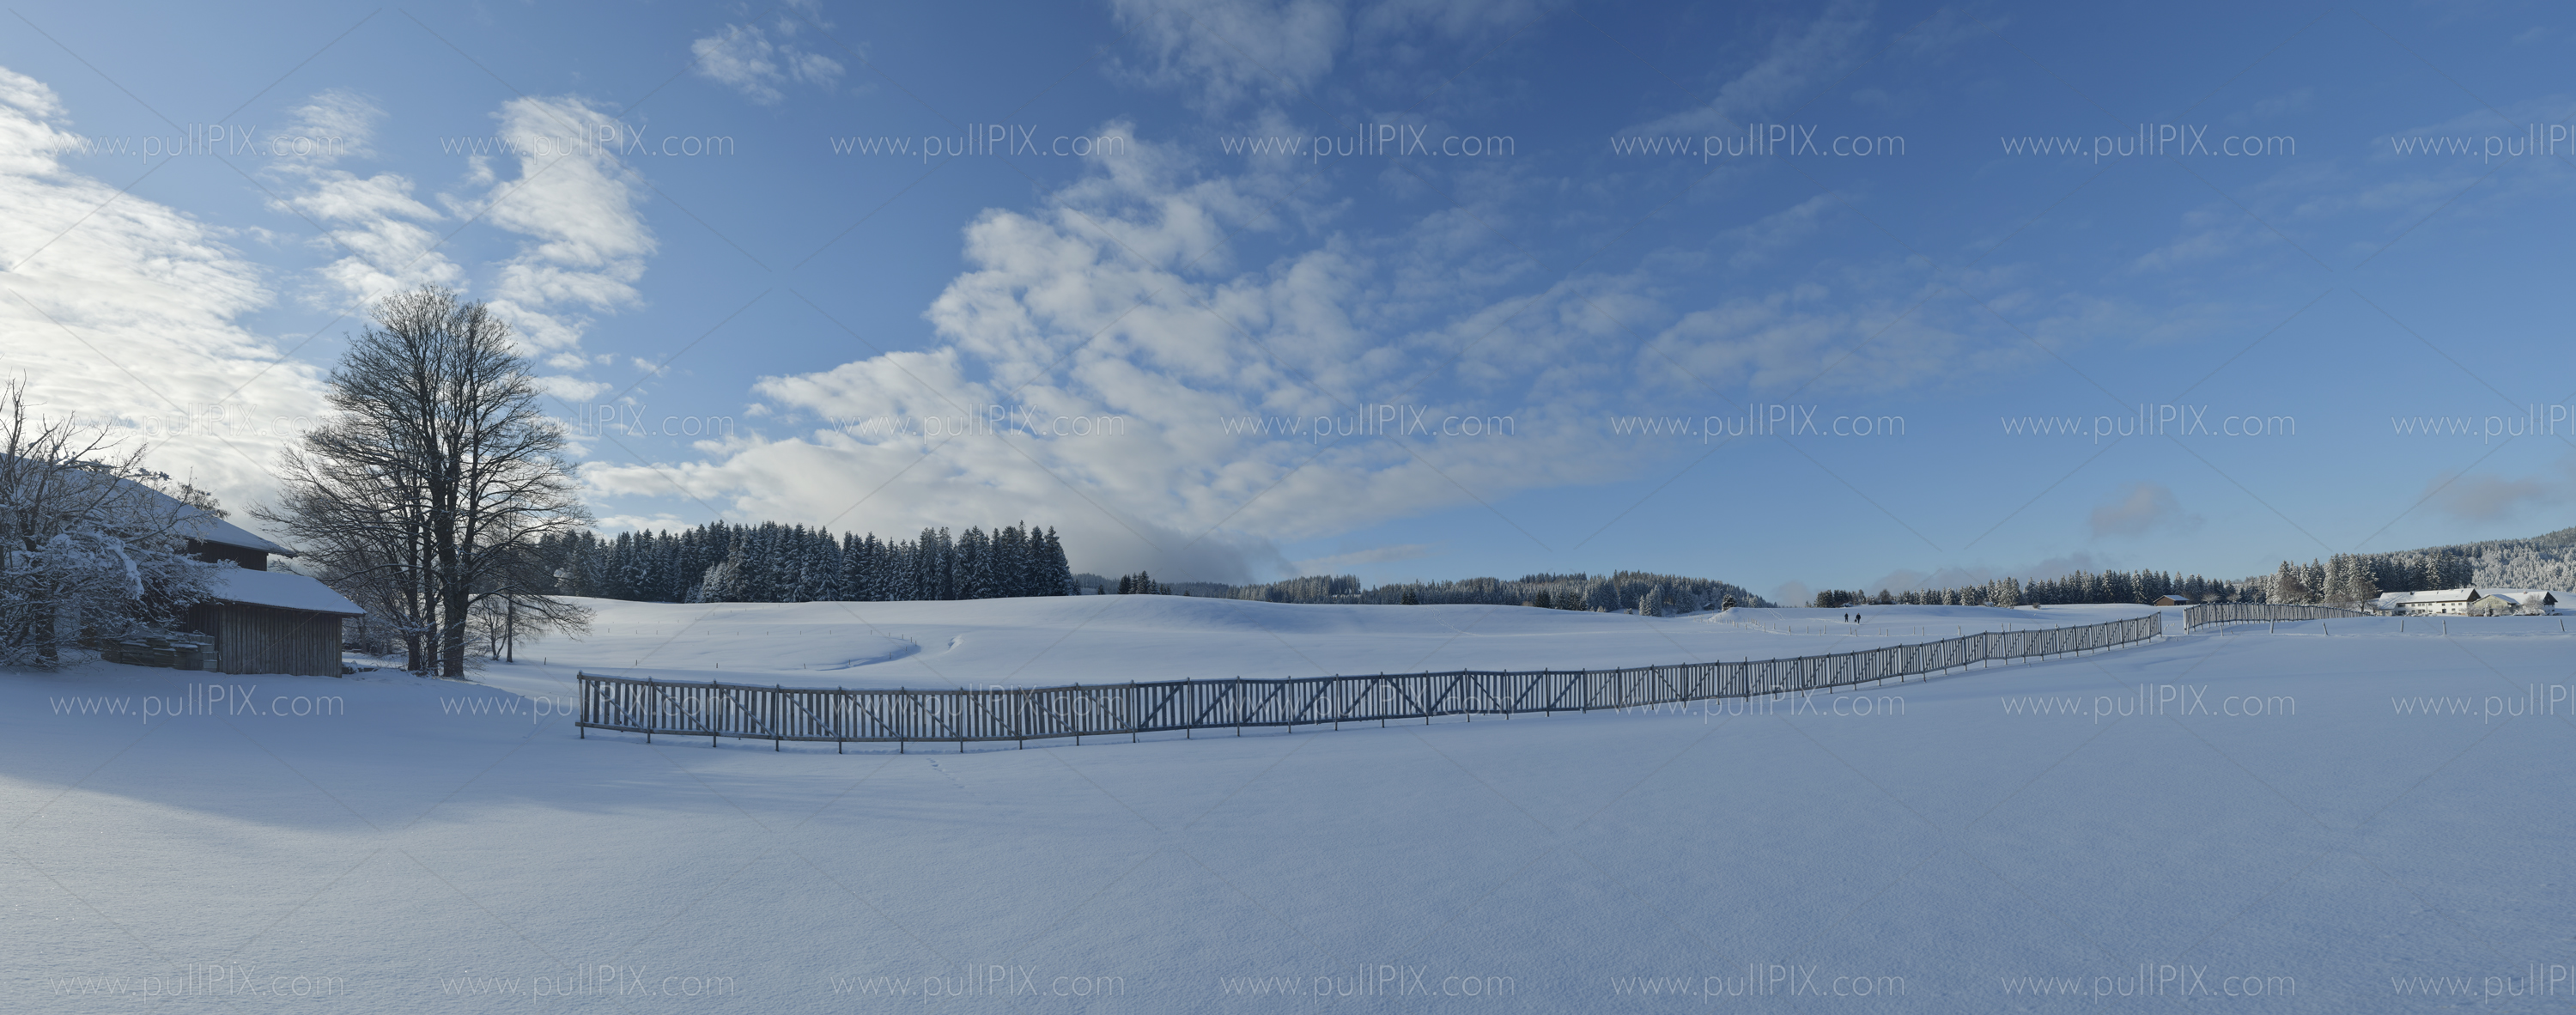 Preview winterliches allgaeu_6.jpg